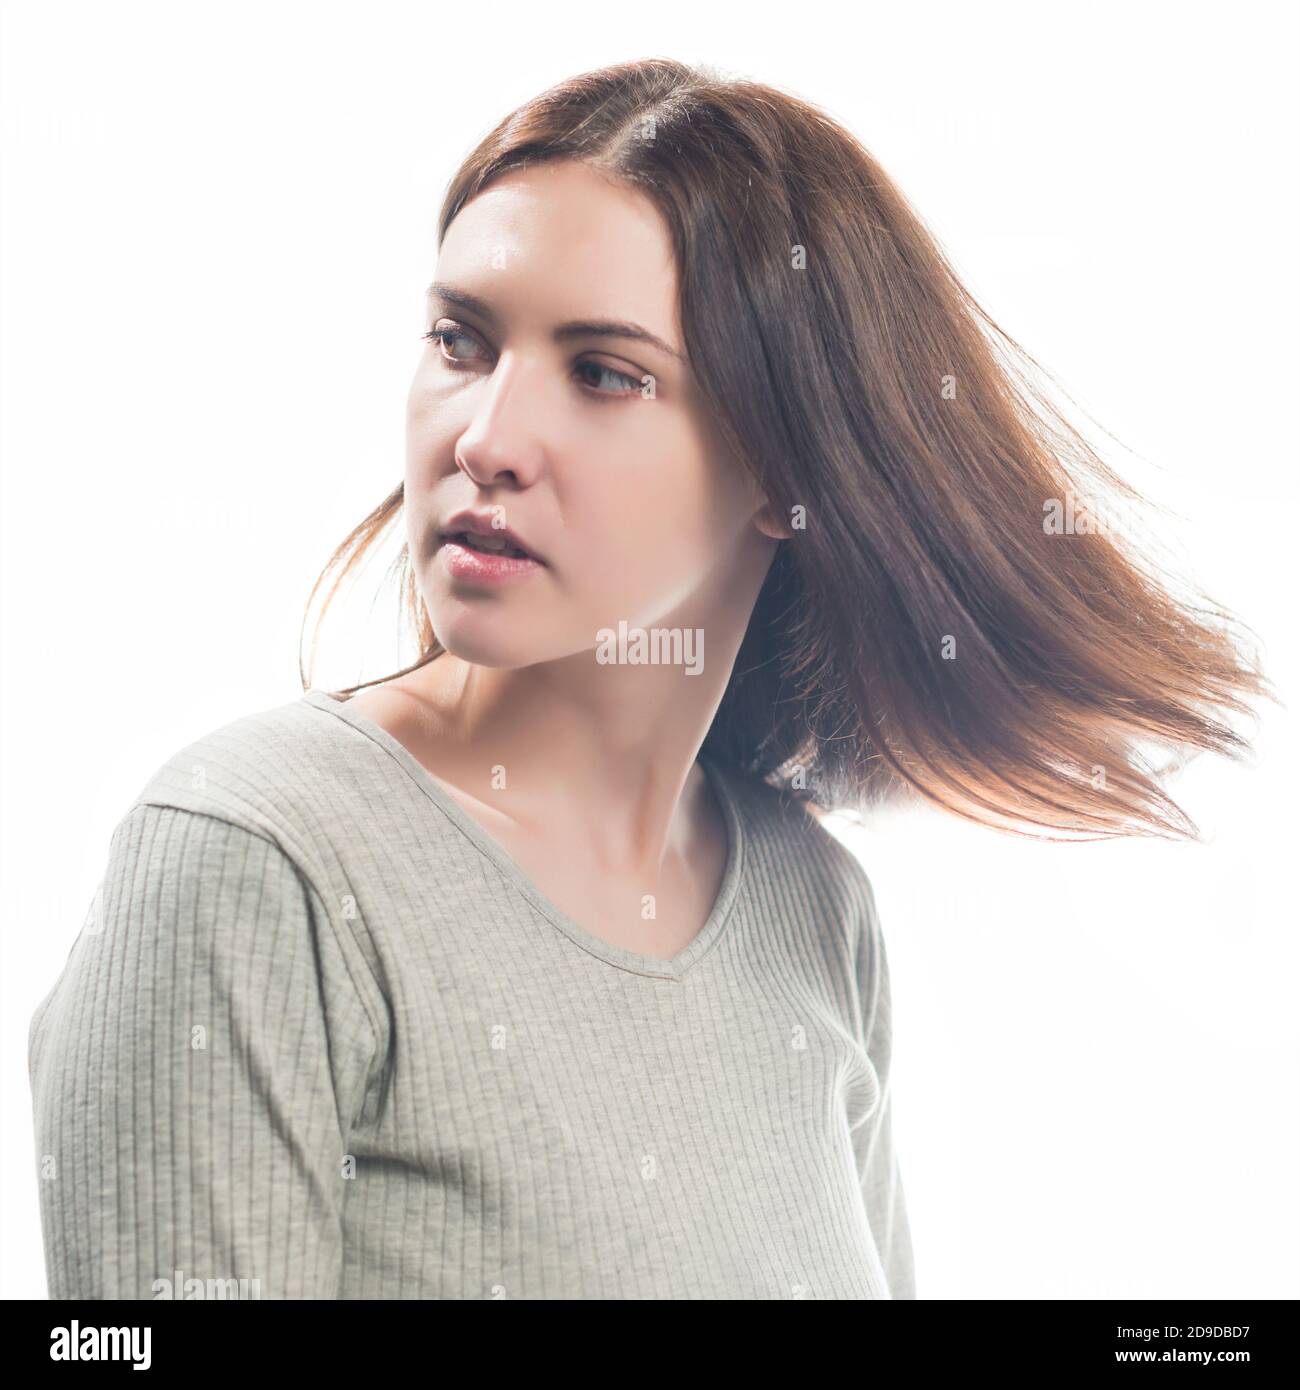 giovane sognante brunet donna ritratto isolato su sfondo bianco Foto Stock